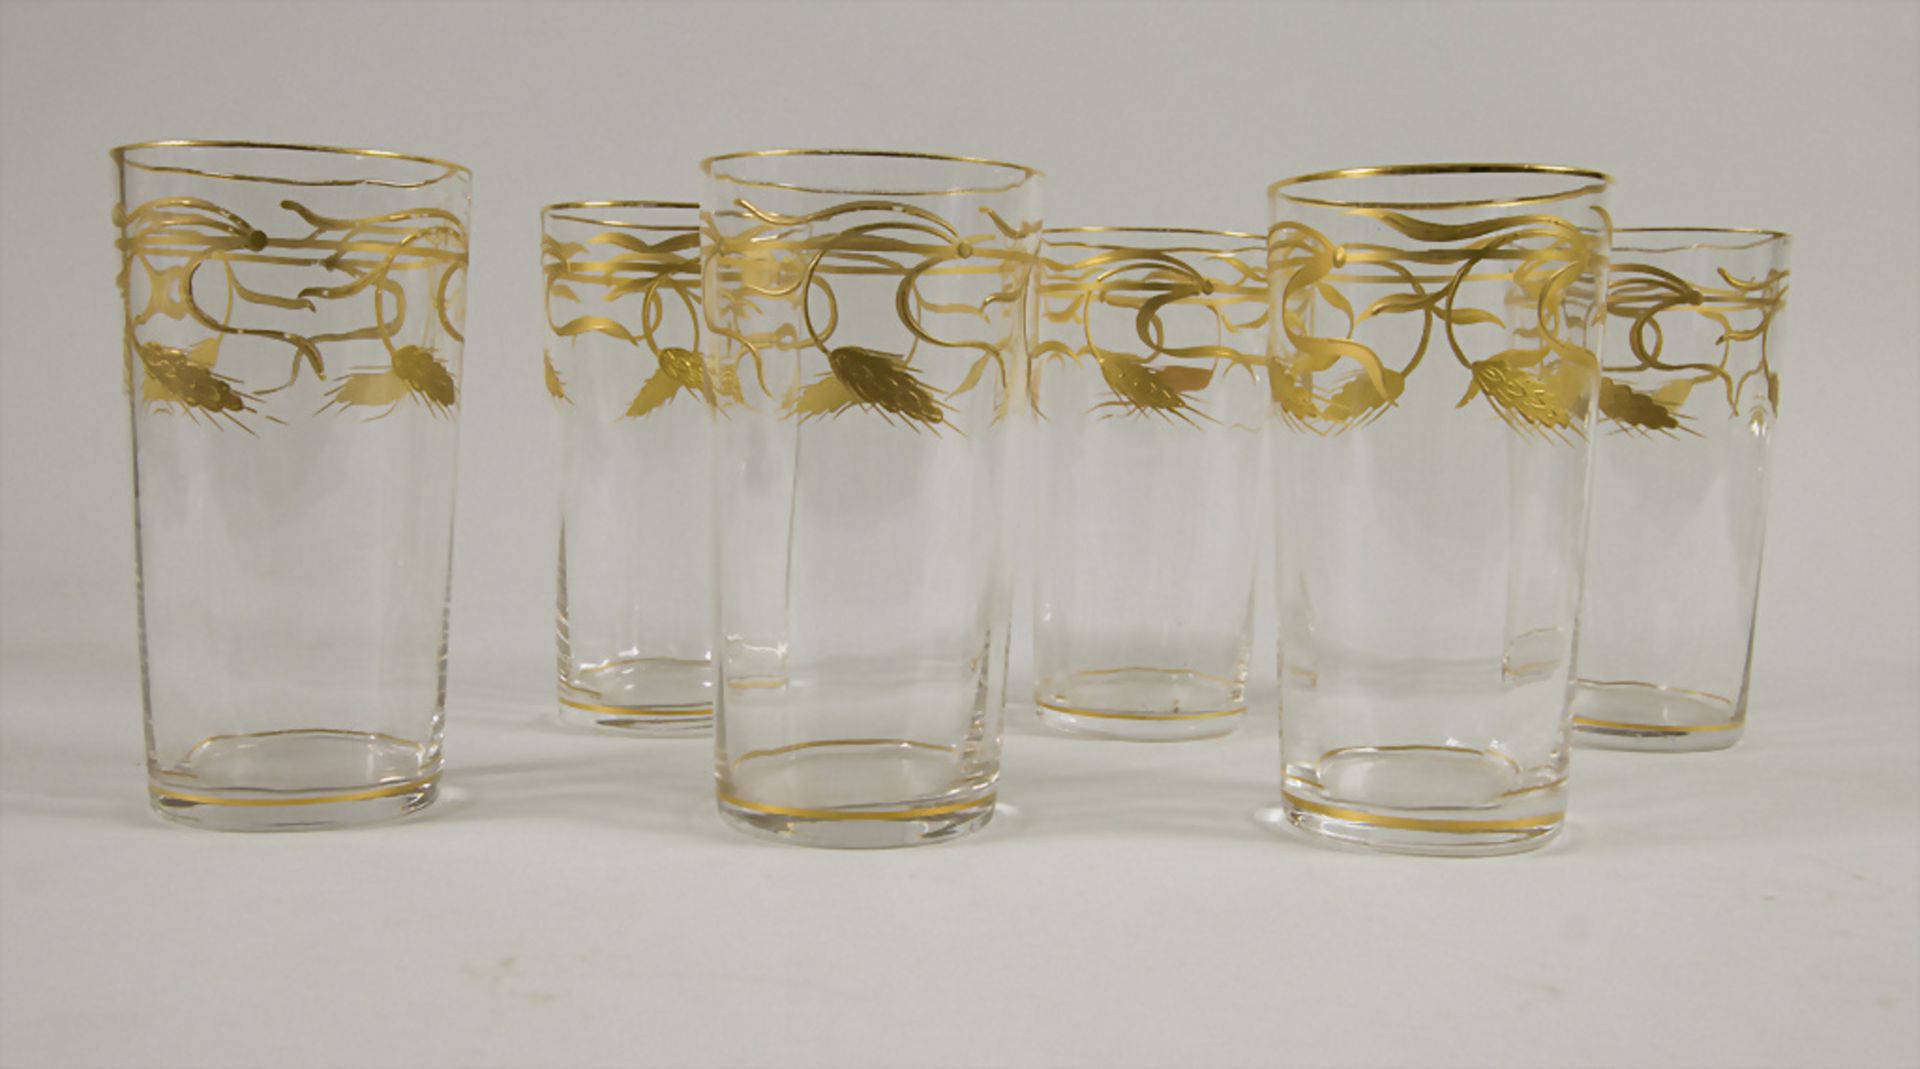 6 Jugendstil Gläser 'Gerste' / 6 Art Nouveau glasses 'Barley', um 1900